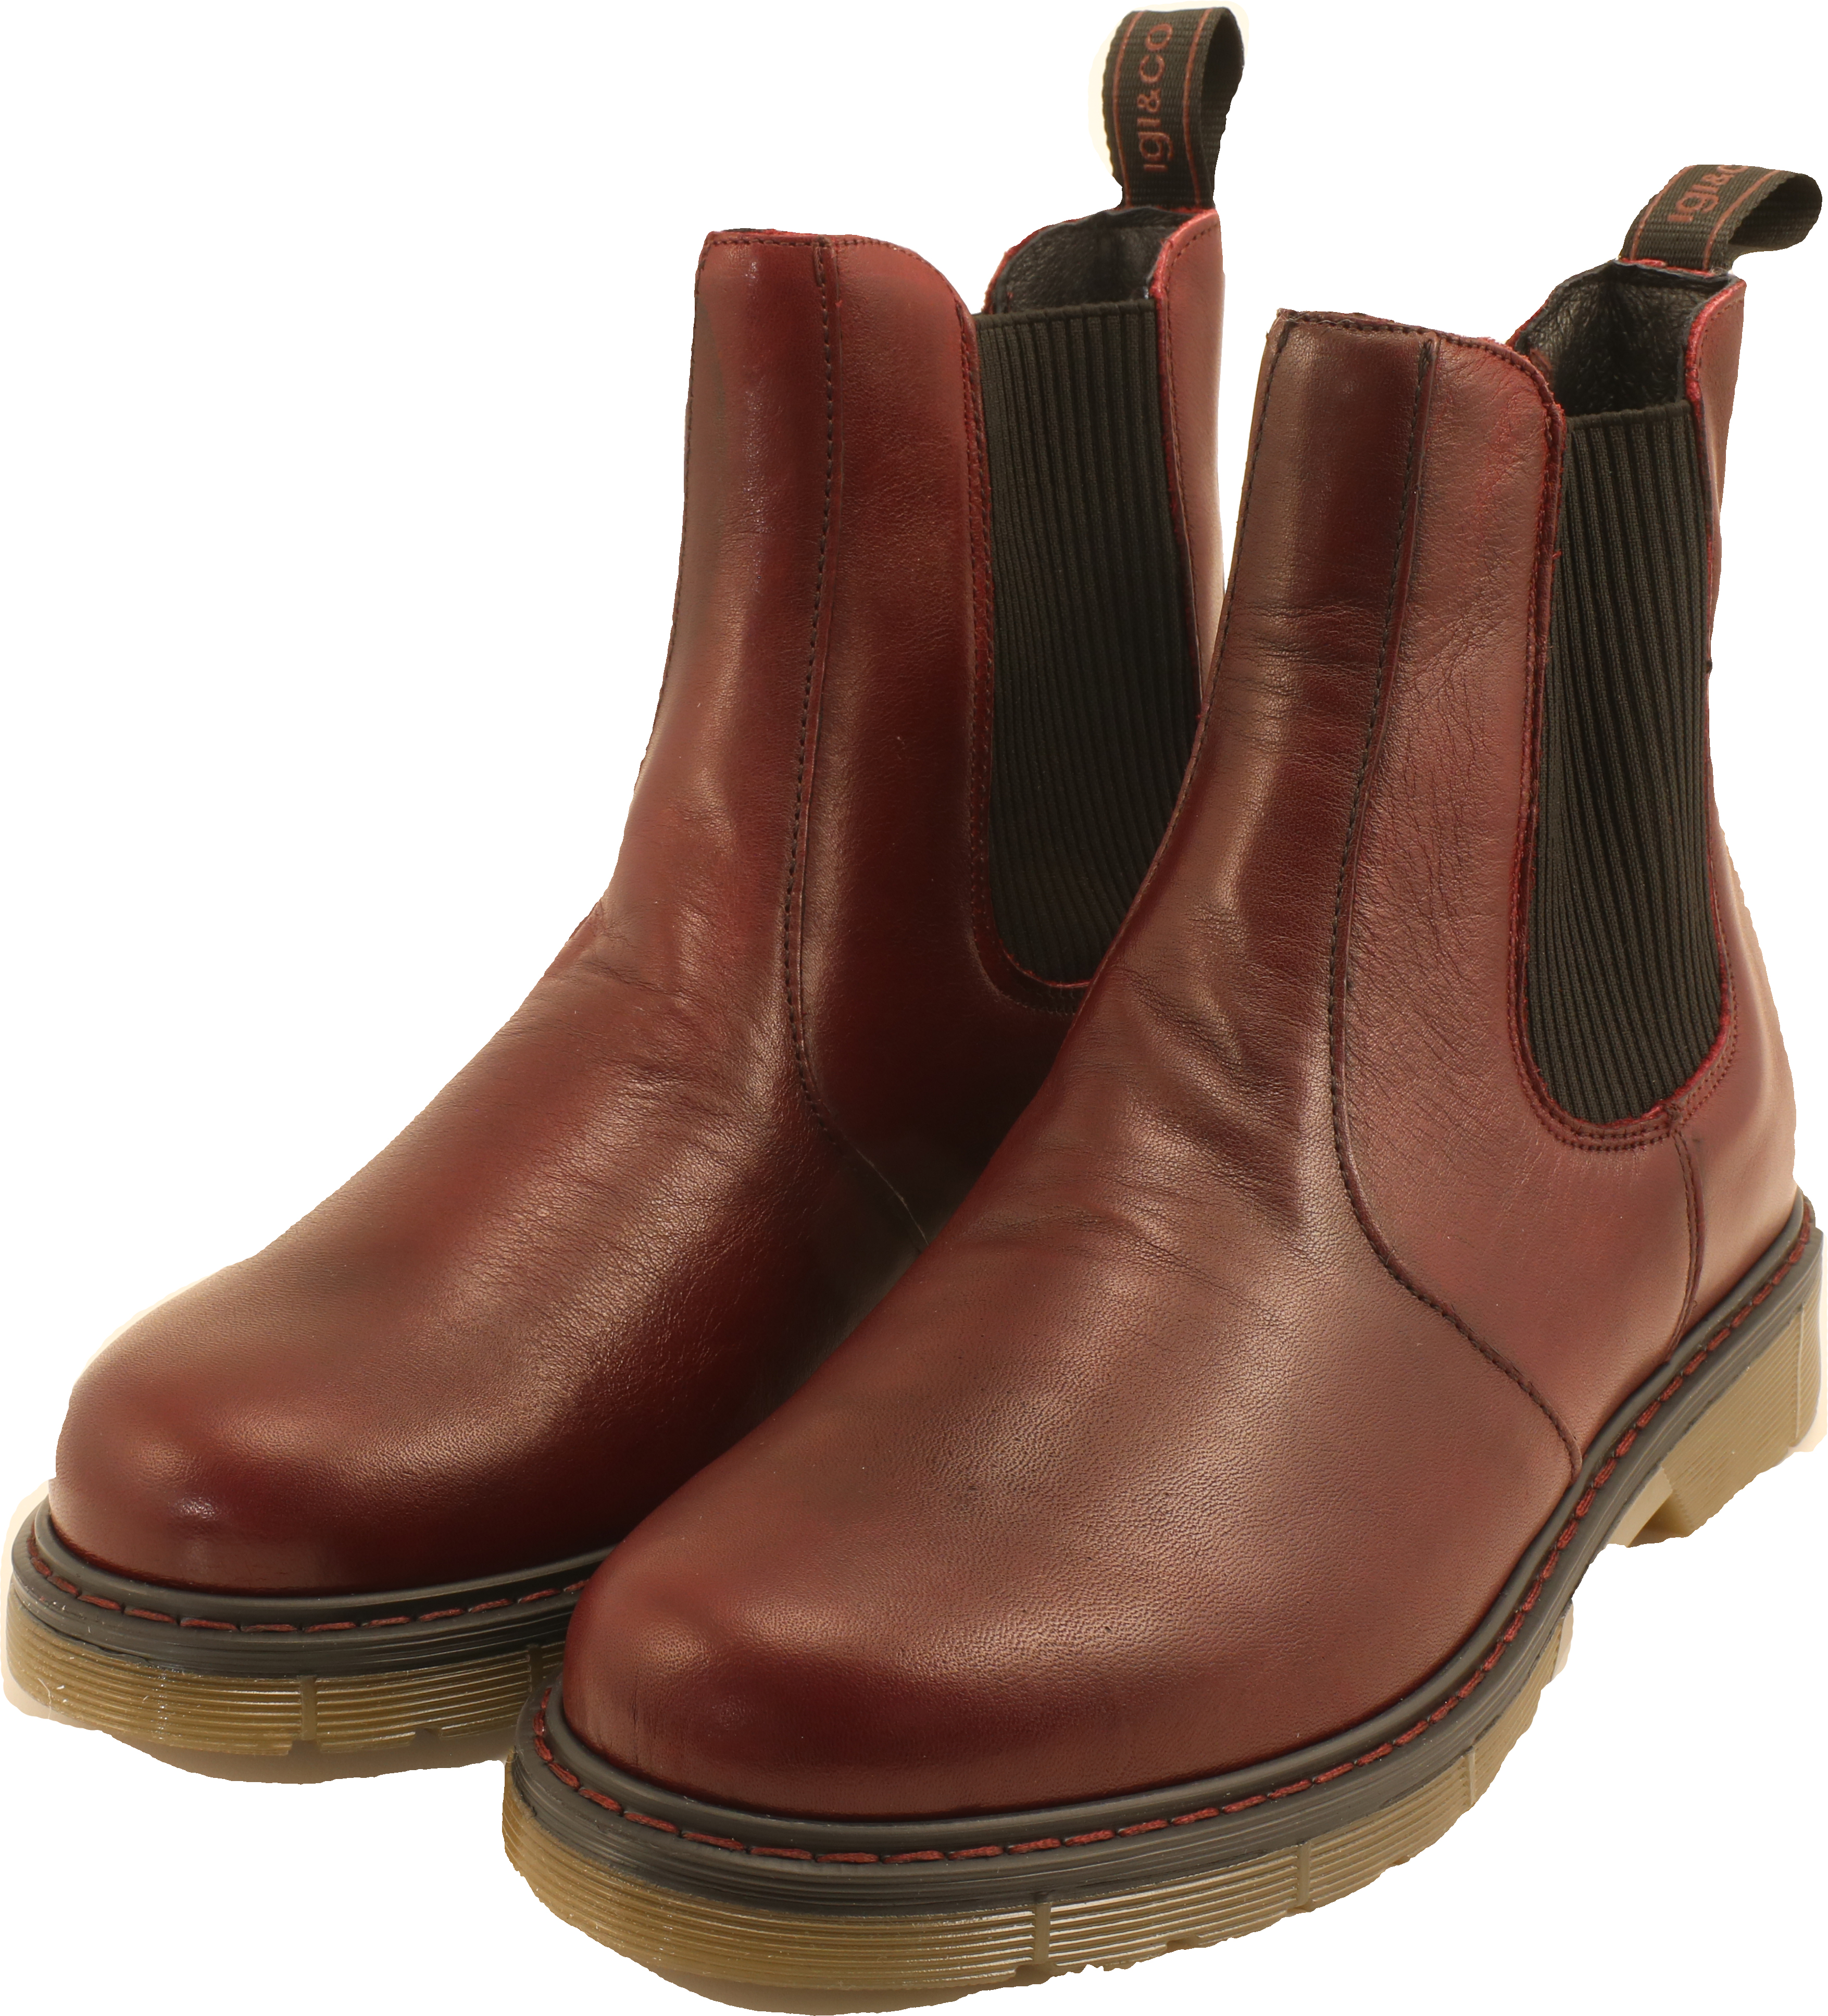 IGI&CO Dld 81883 - Vitello Antik - Bordo suede leather